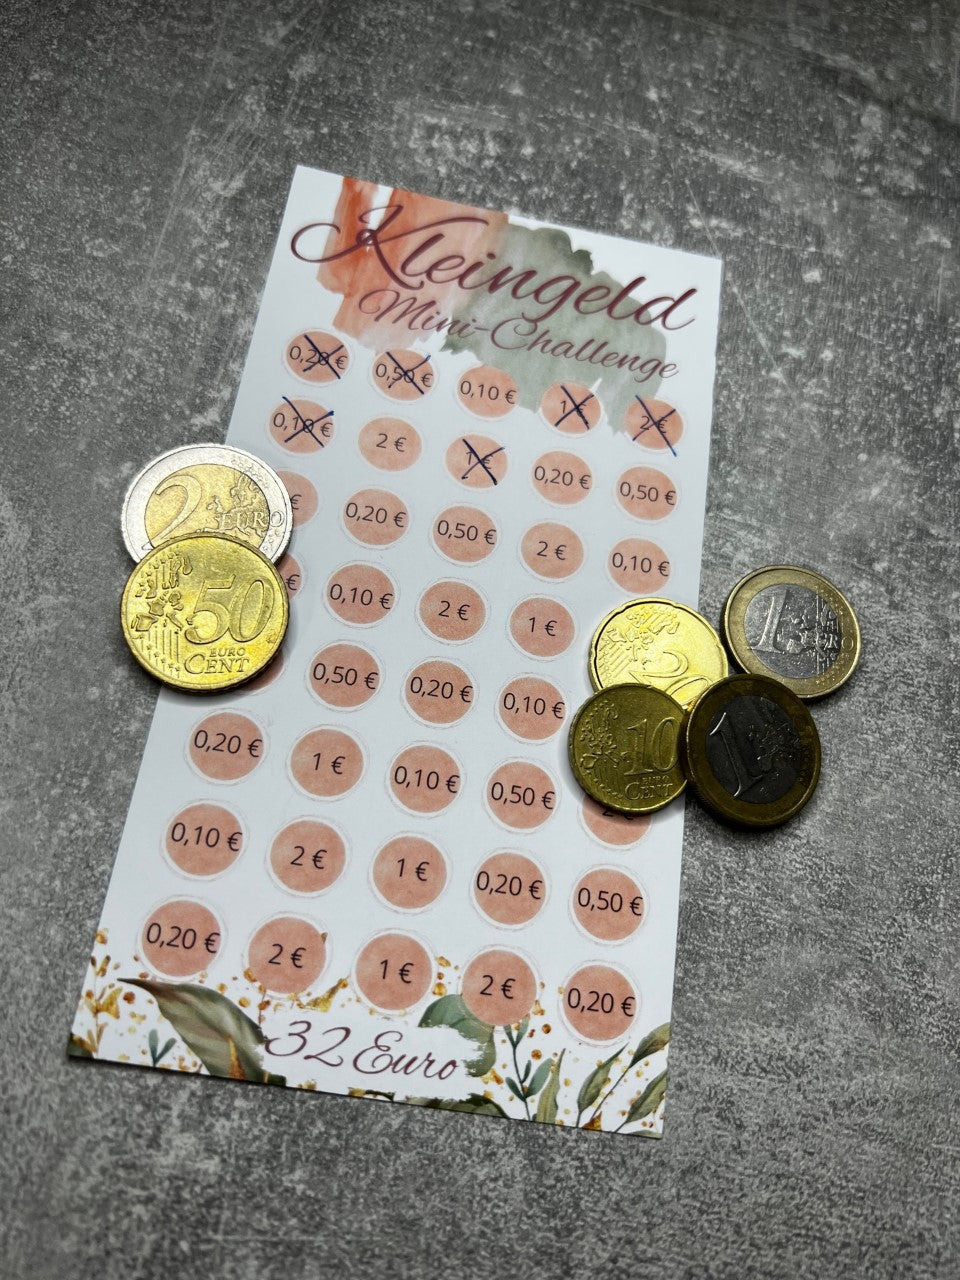 Kleingeldchallenge / Kleingeld Mini Challenge